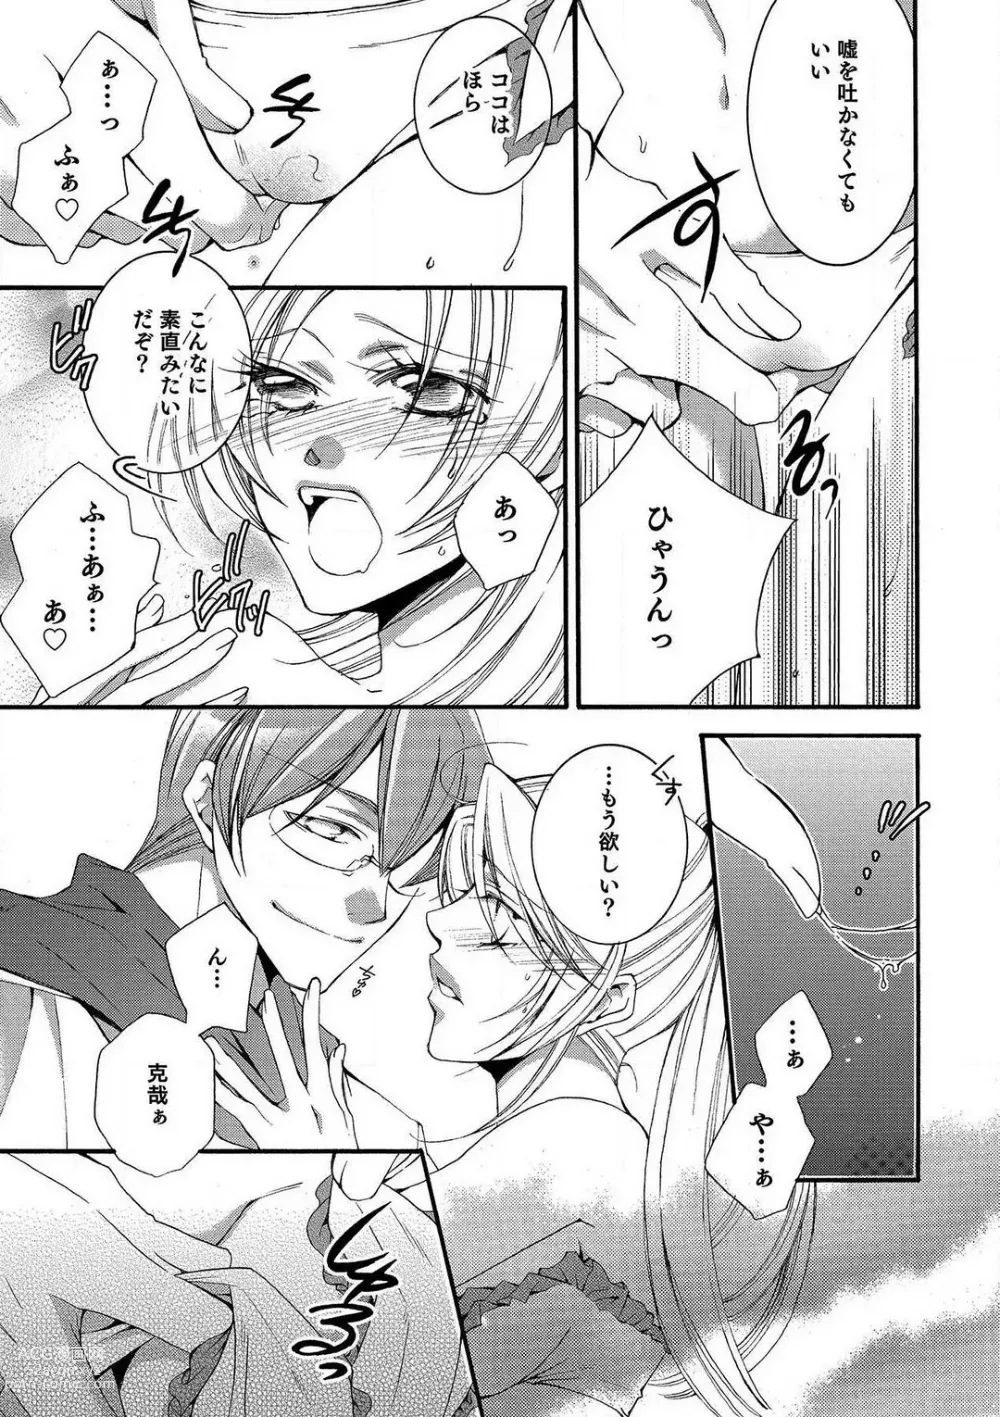 Page 69 of manga LOVE×PLAY 1-4